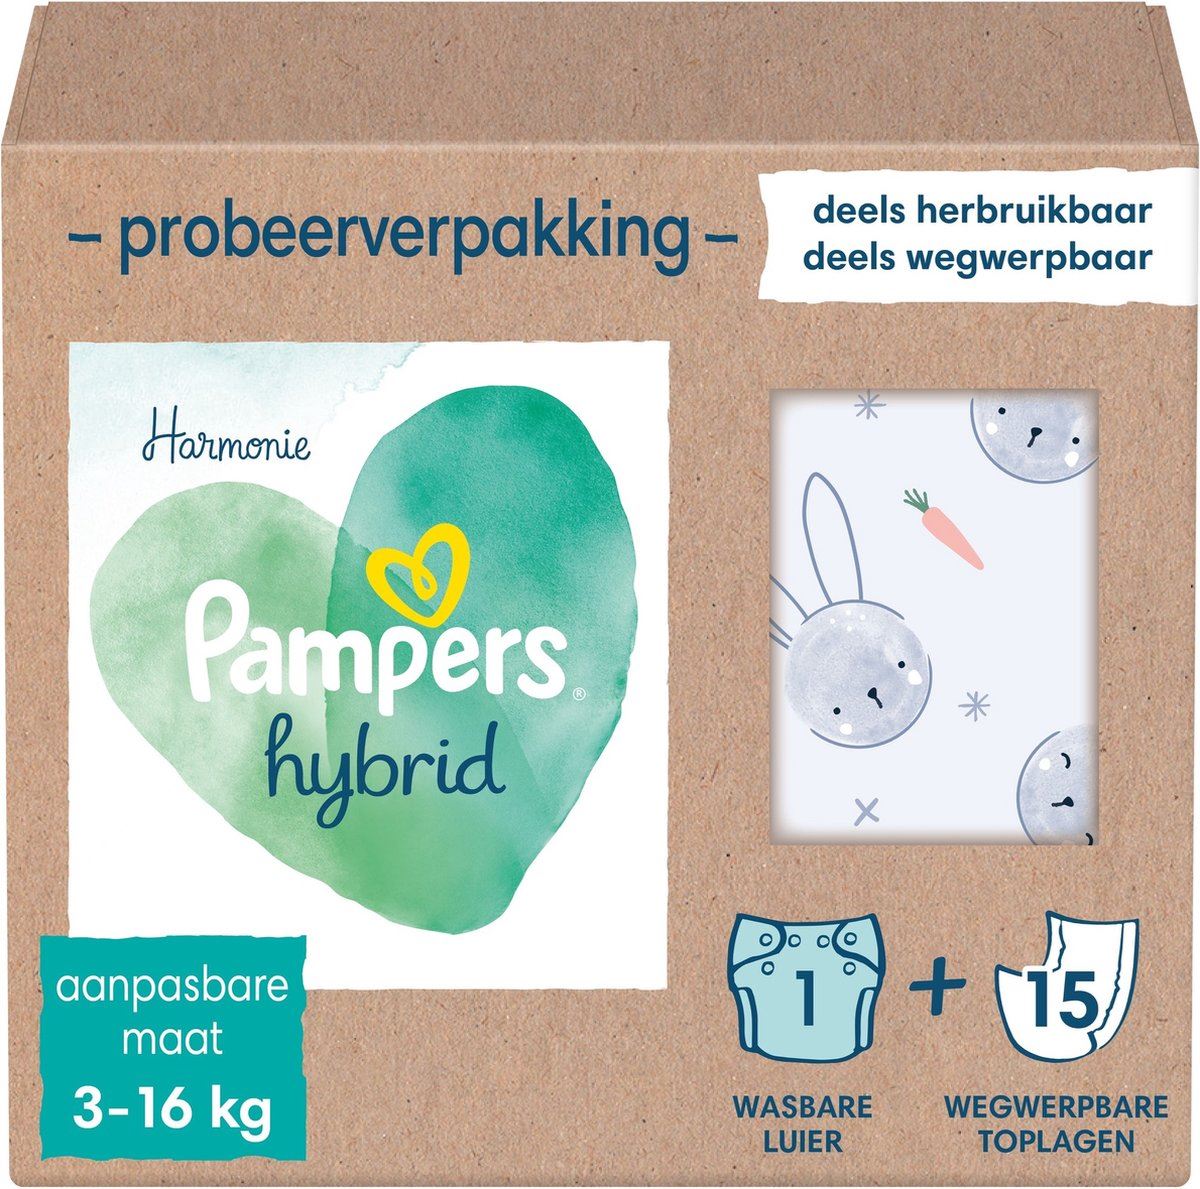 Pampers-Harmonie-Hybrid-startpaket-Wasbare-luiers-voor-baby-s-1x-wasbare-15x-wegwerpbare-luiers